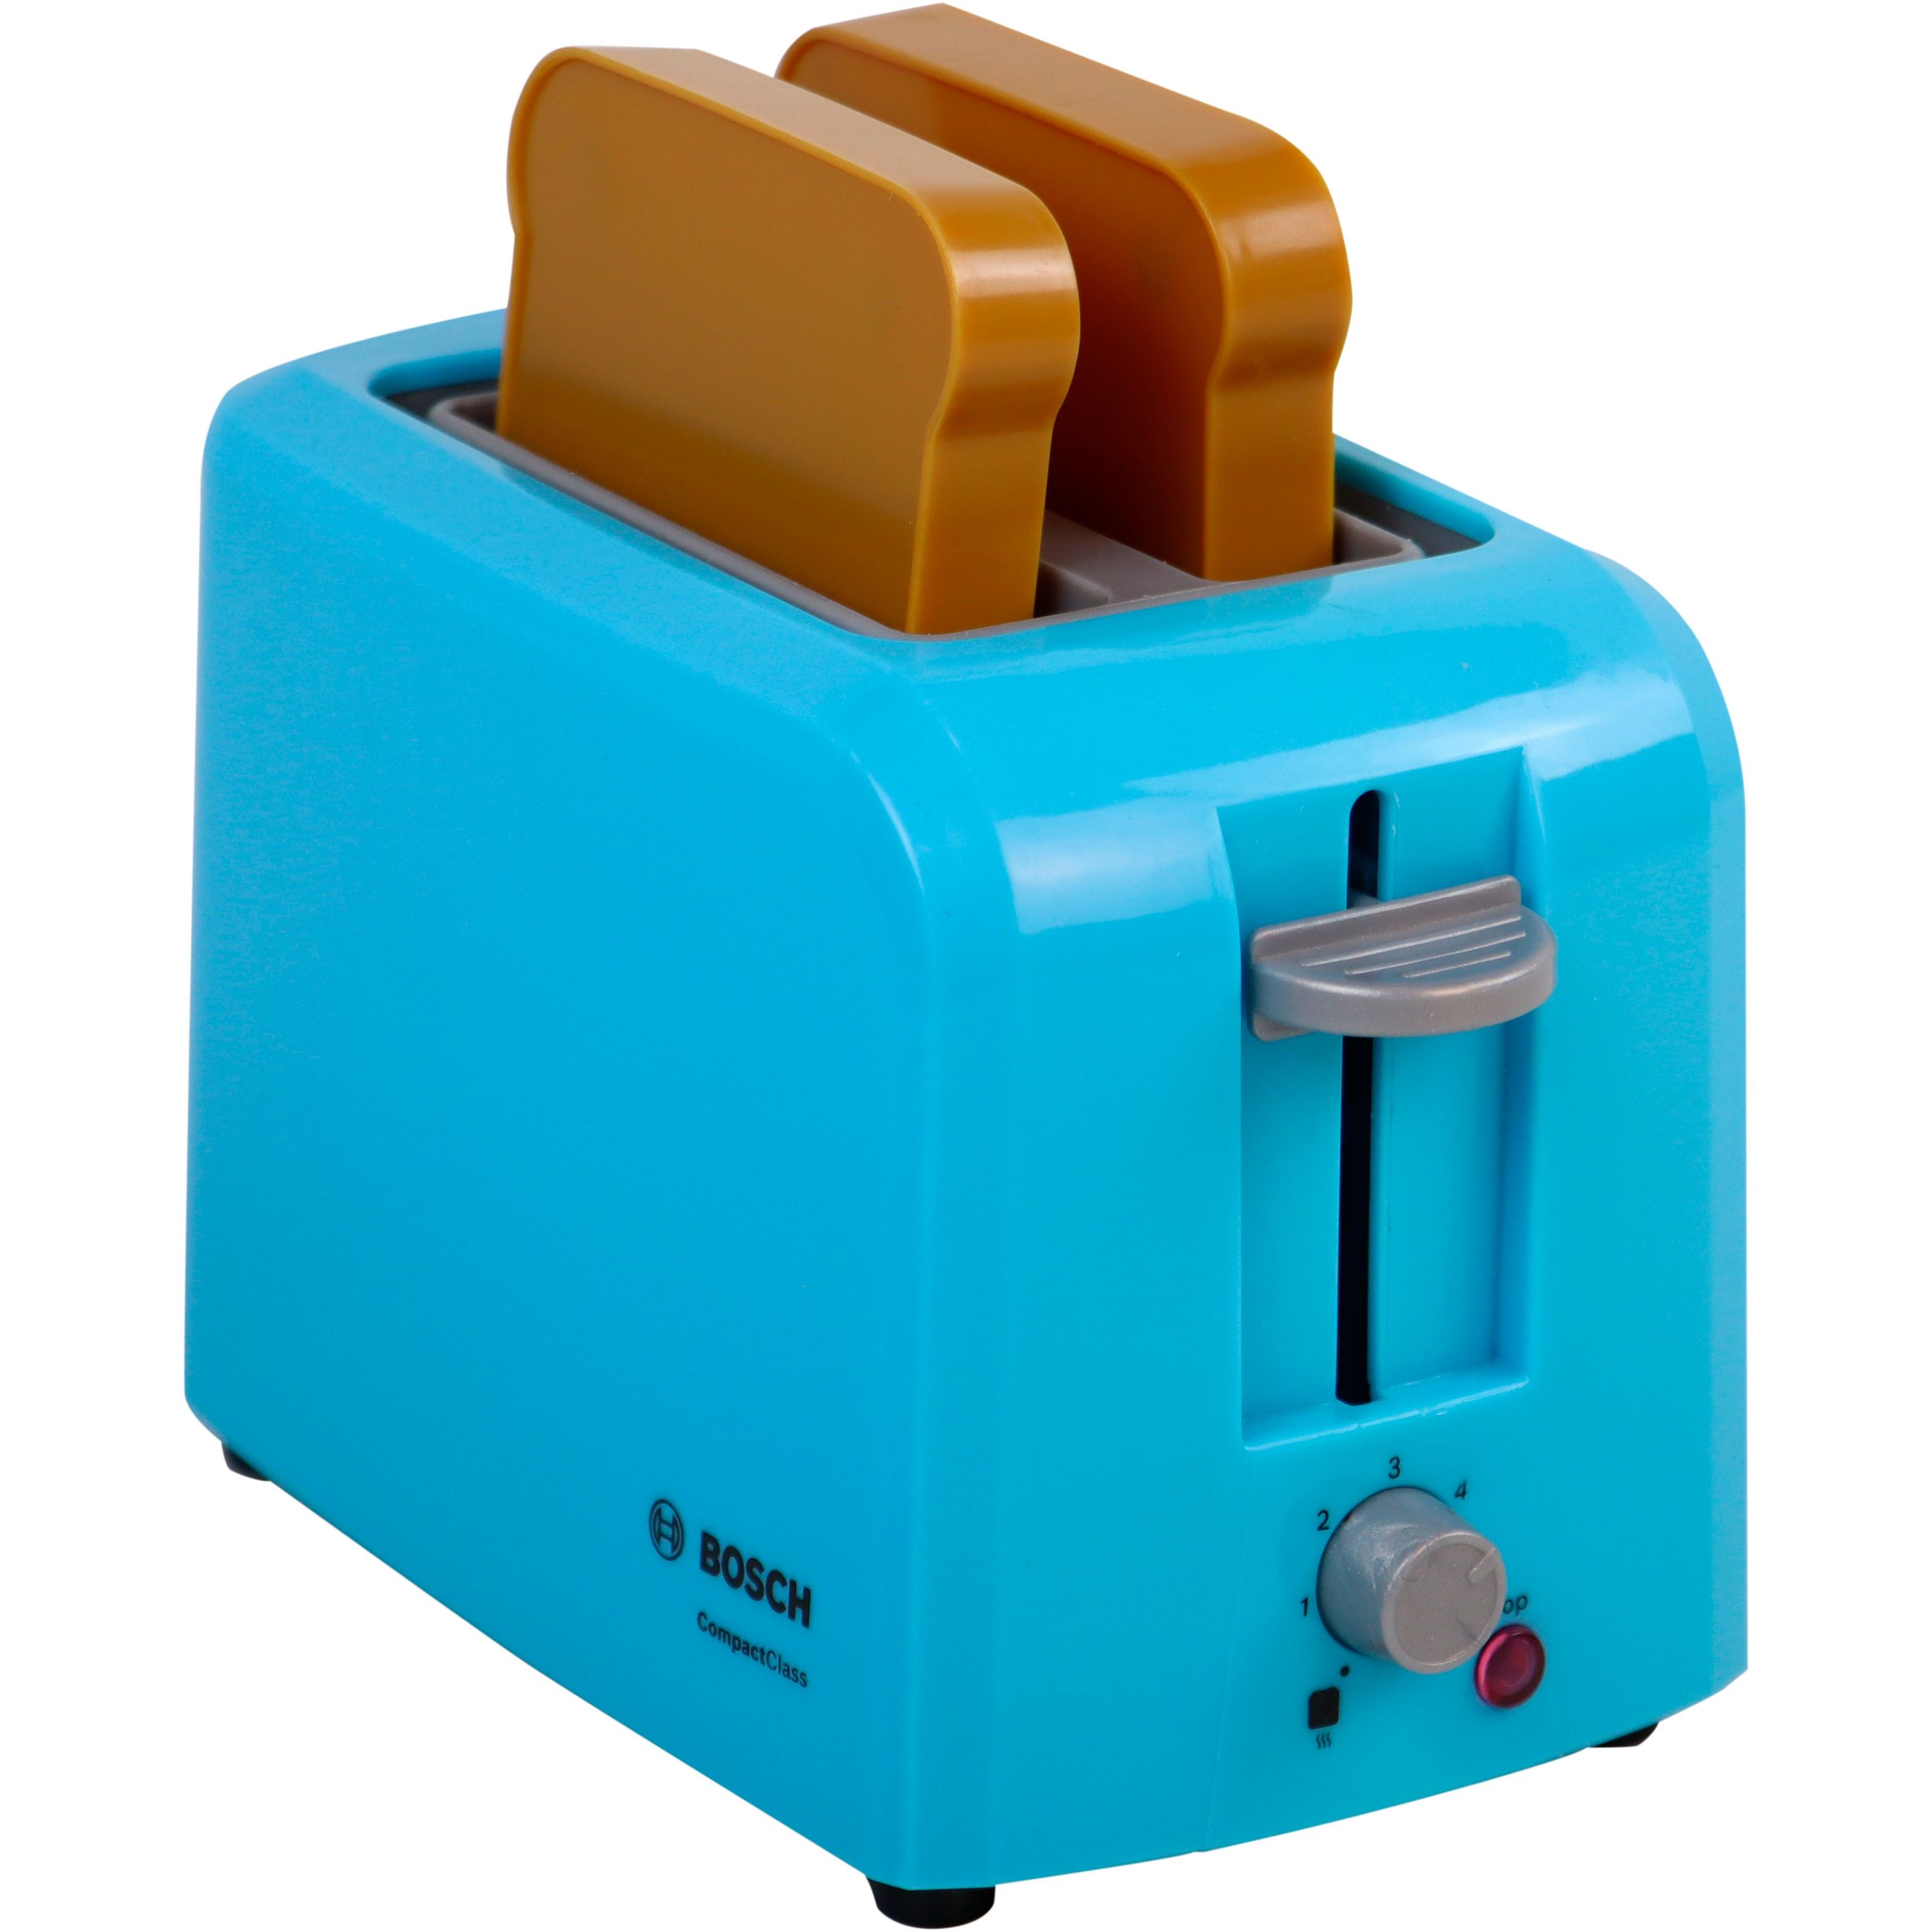 Іграшковий набір Bosch Mini тостер бірюзовий (9518) - фото 1